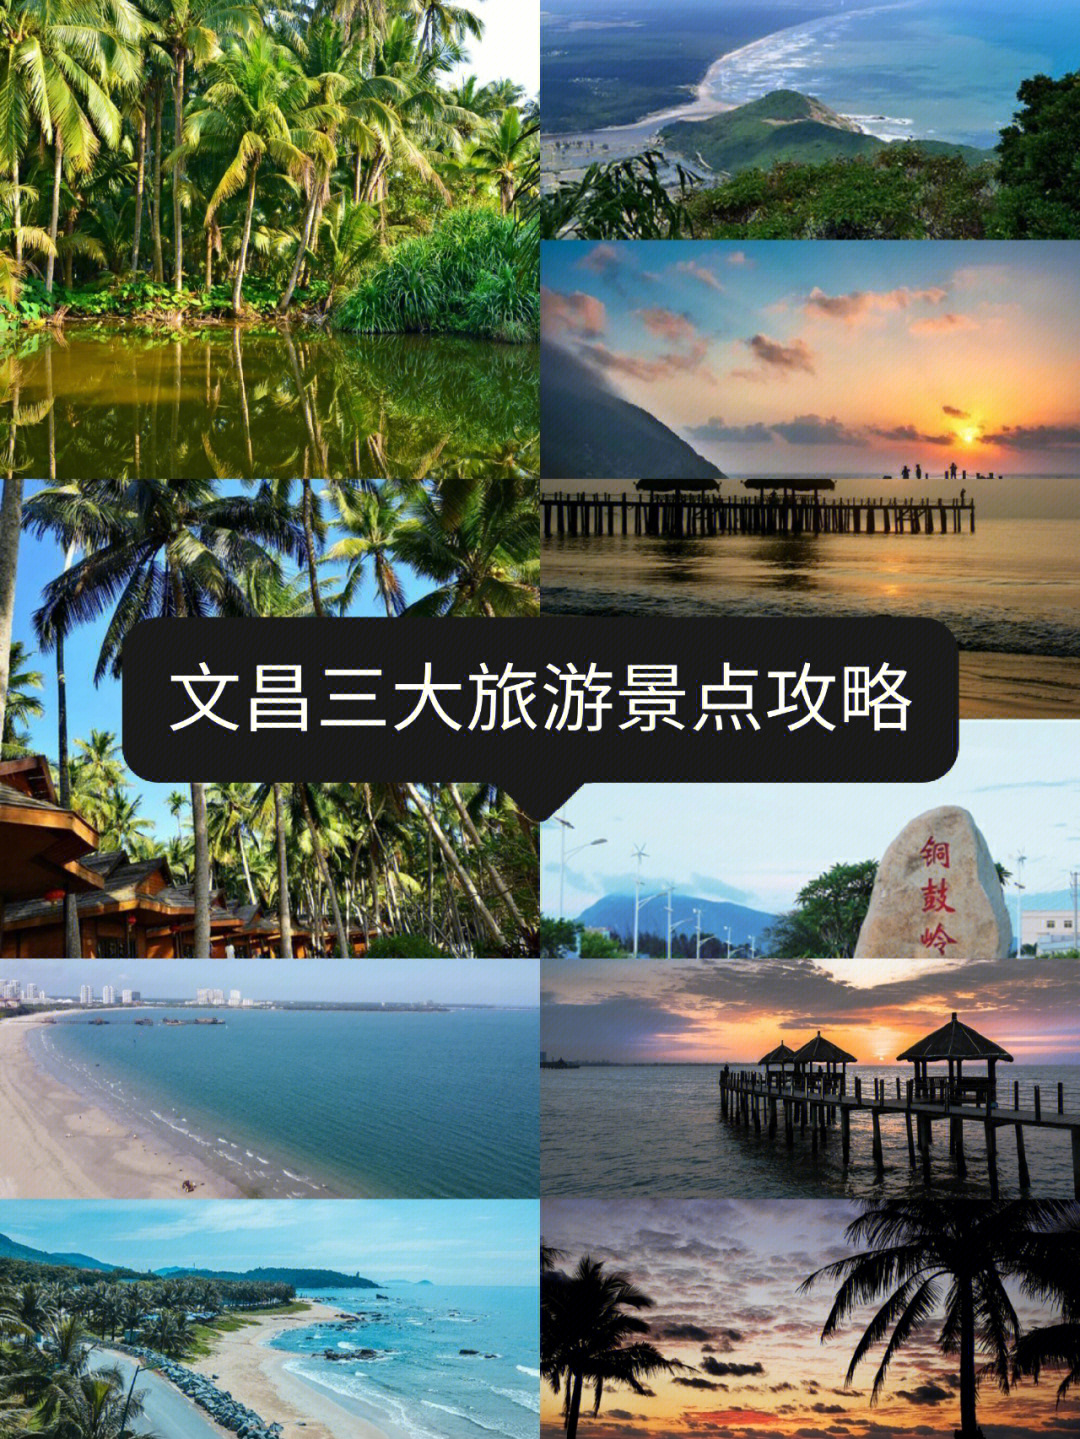 沙滩,植被,空气,海岛,风情,田园八大旅游资源融于一体,是海南省旅游重